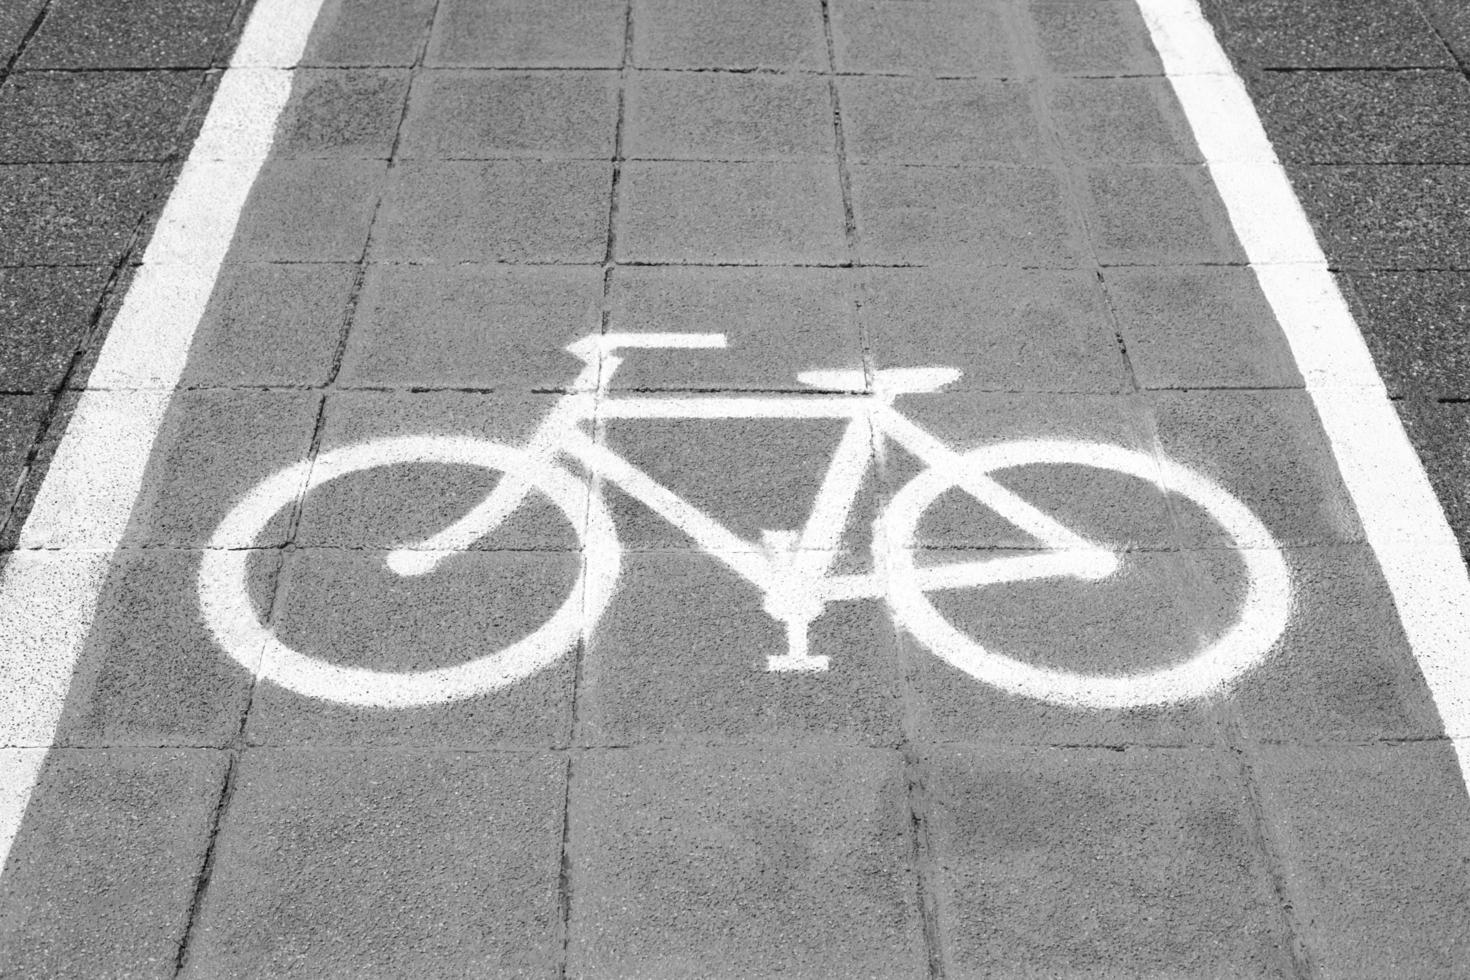 ciclovia e símbolo de bicicleta branca foto